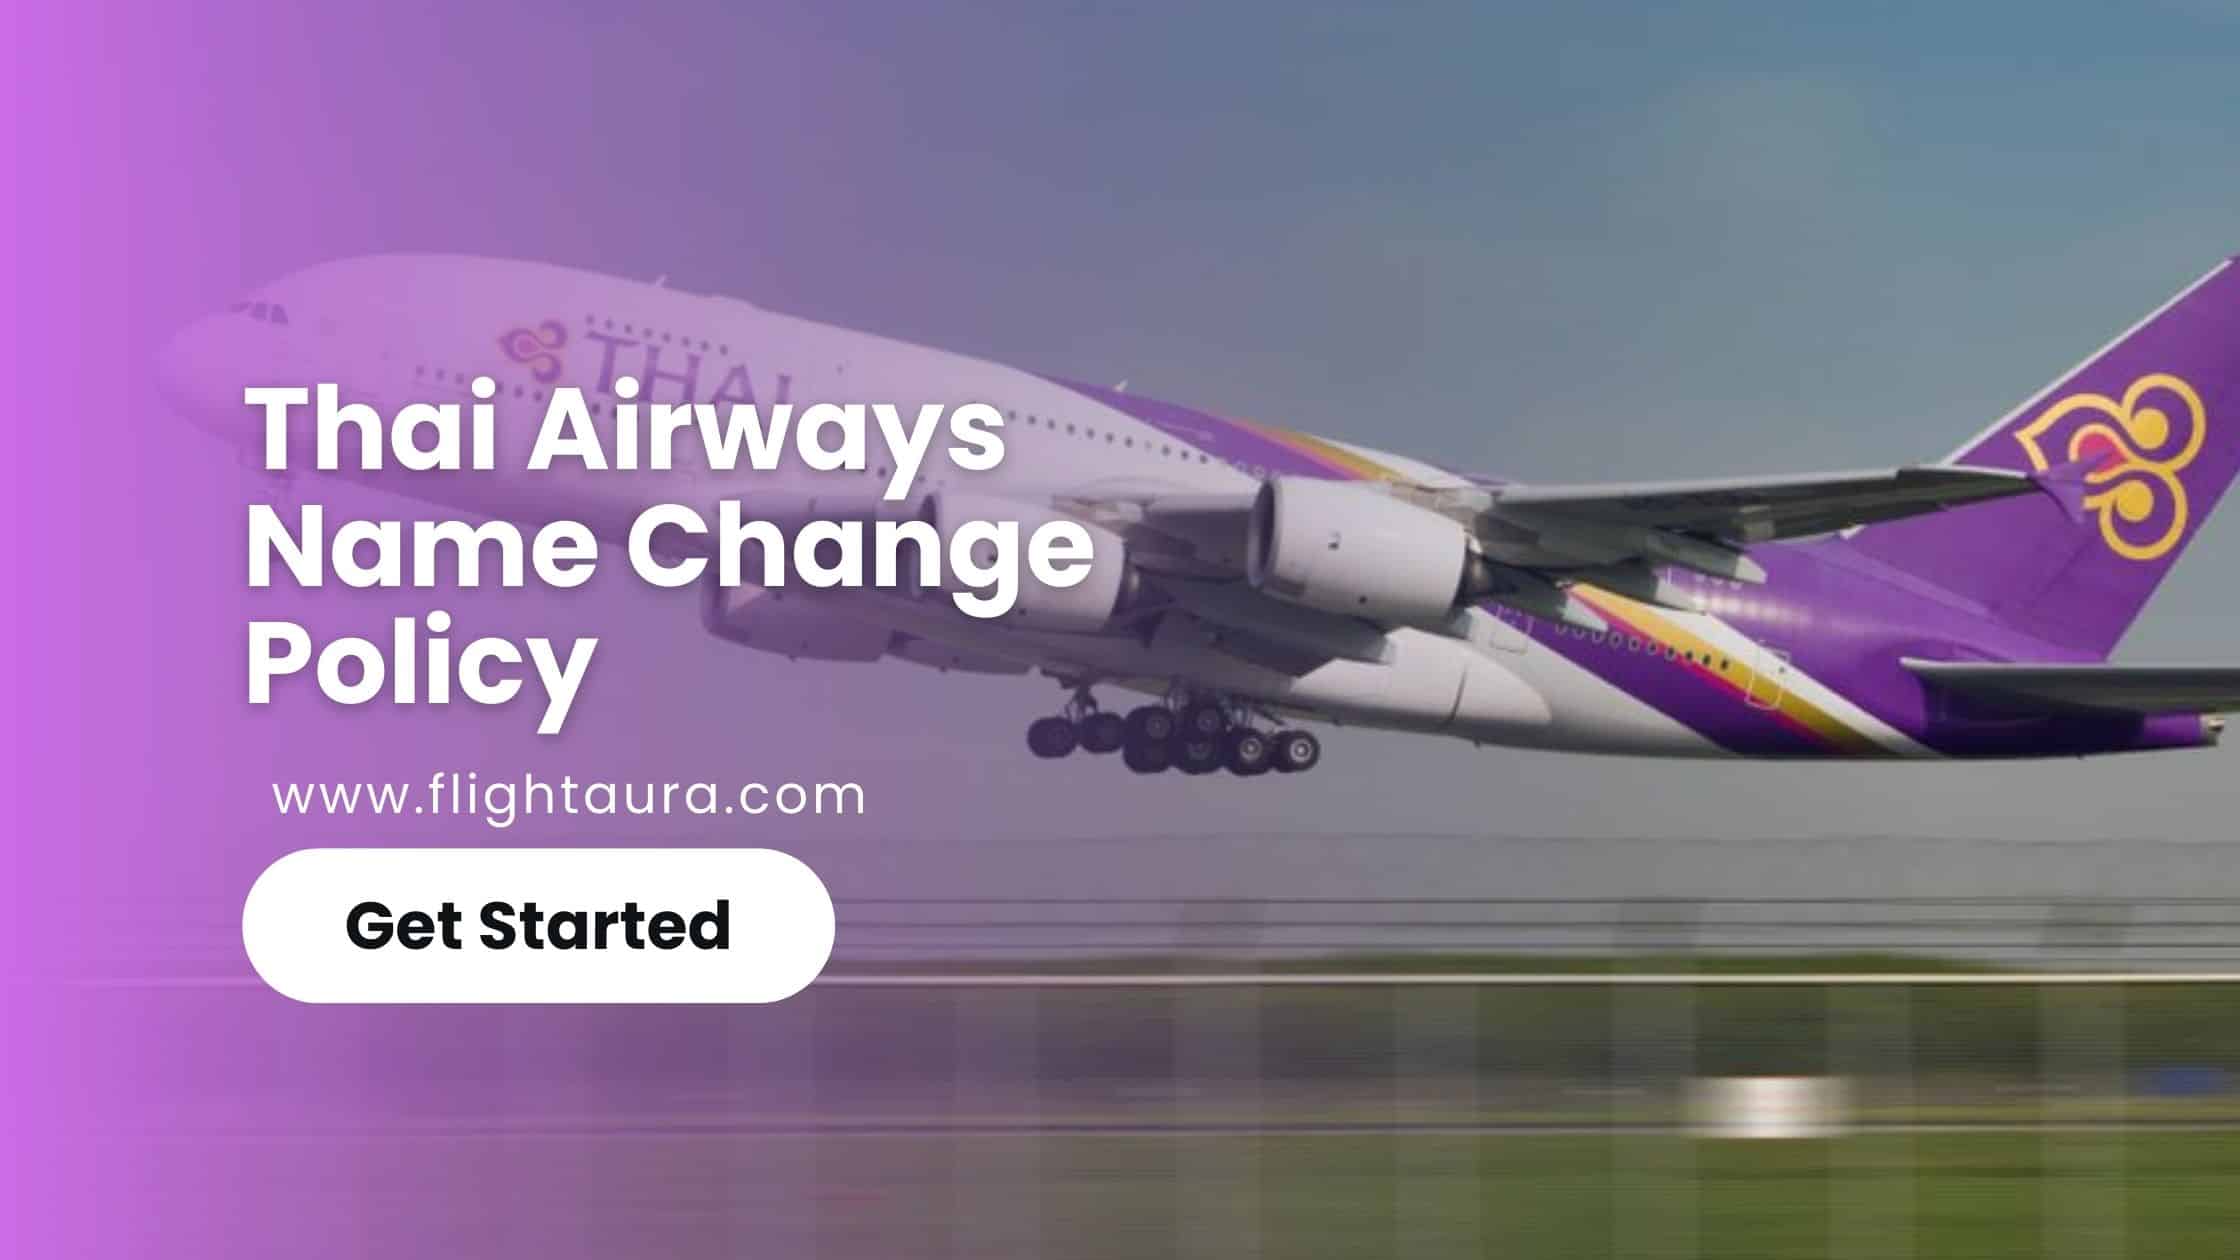 Thai Airways Name Change Policy - Flightaura